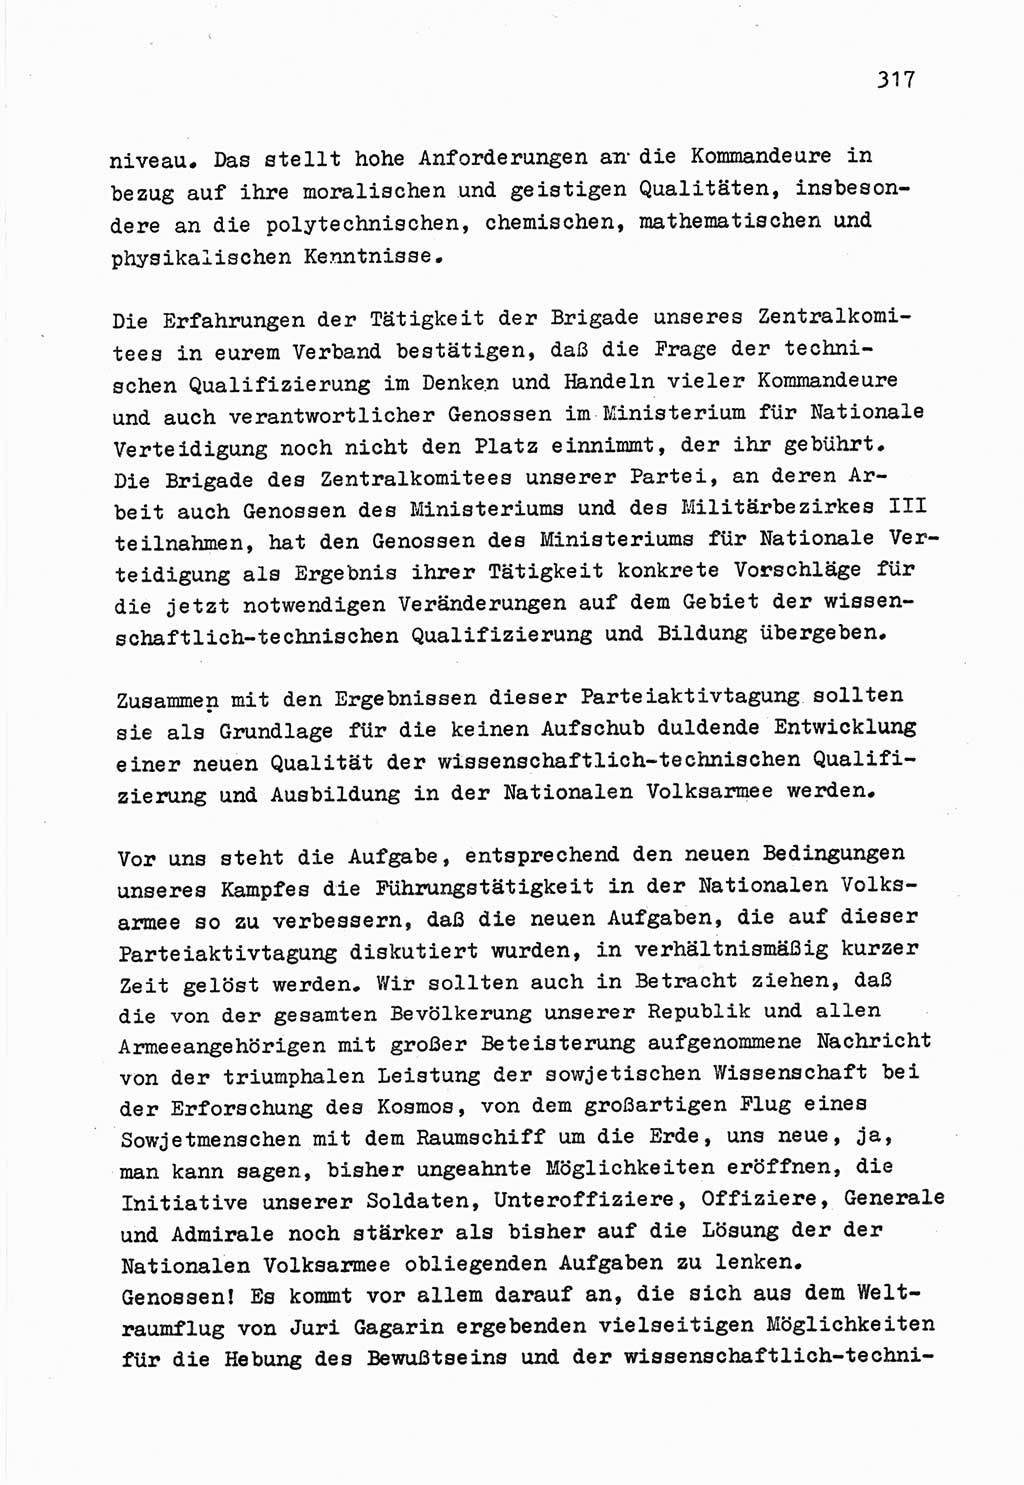 Zu Fragen der Parteiarbeit [Sozialistische Einheitspartei Deutschlands (SED) Deutsche Demokratische Republik (DDR)] 1979, Seite 317 (Fr. PA SED DDR 1979, S. 317)